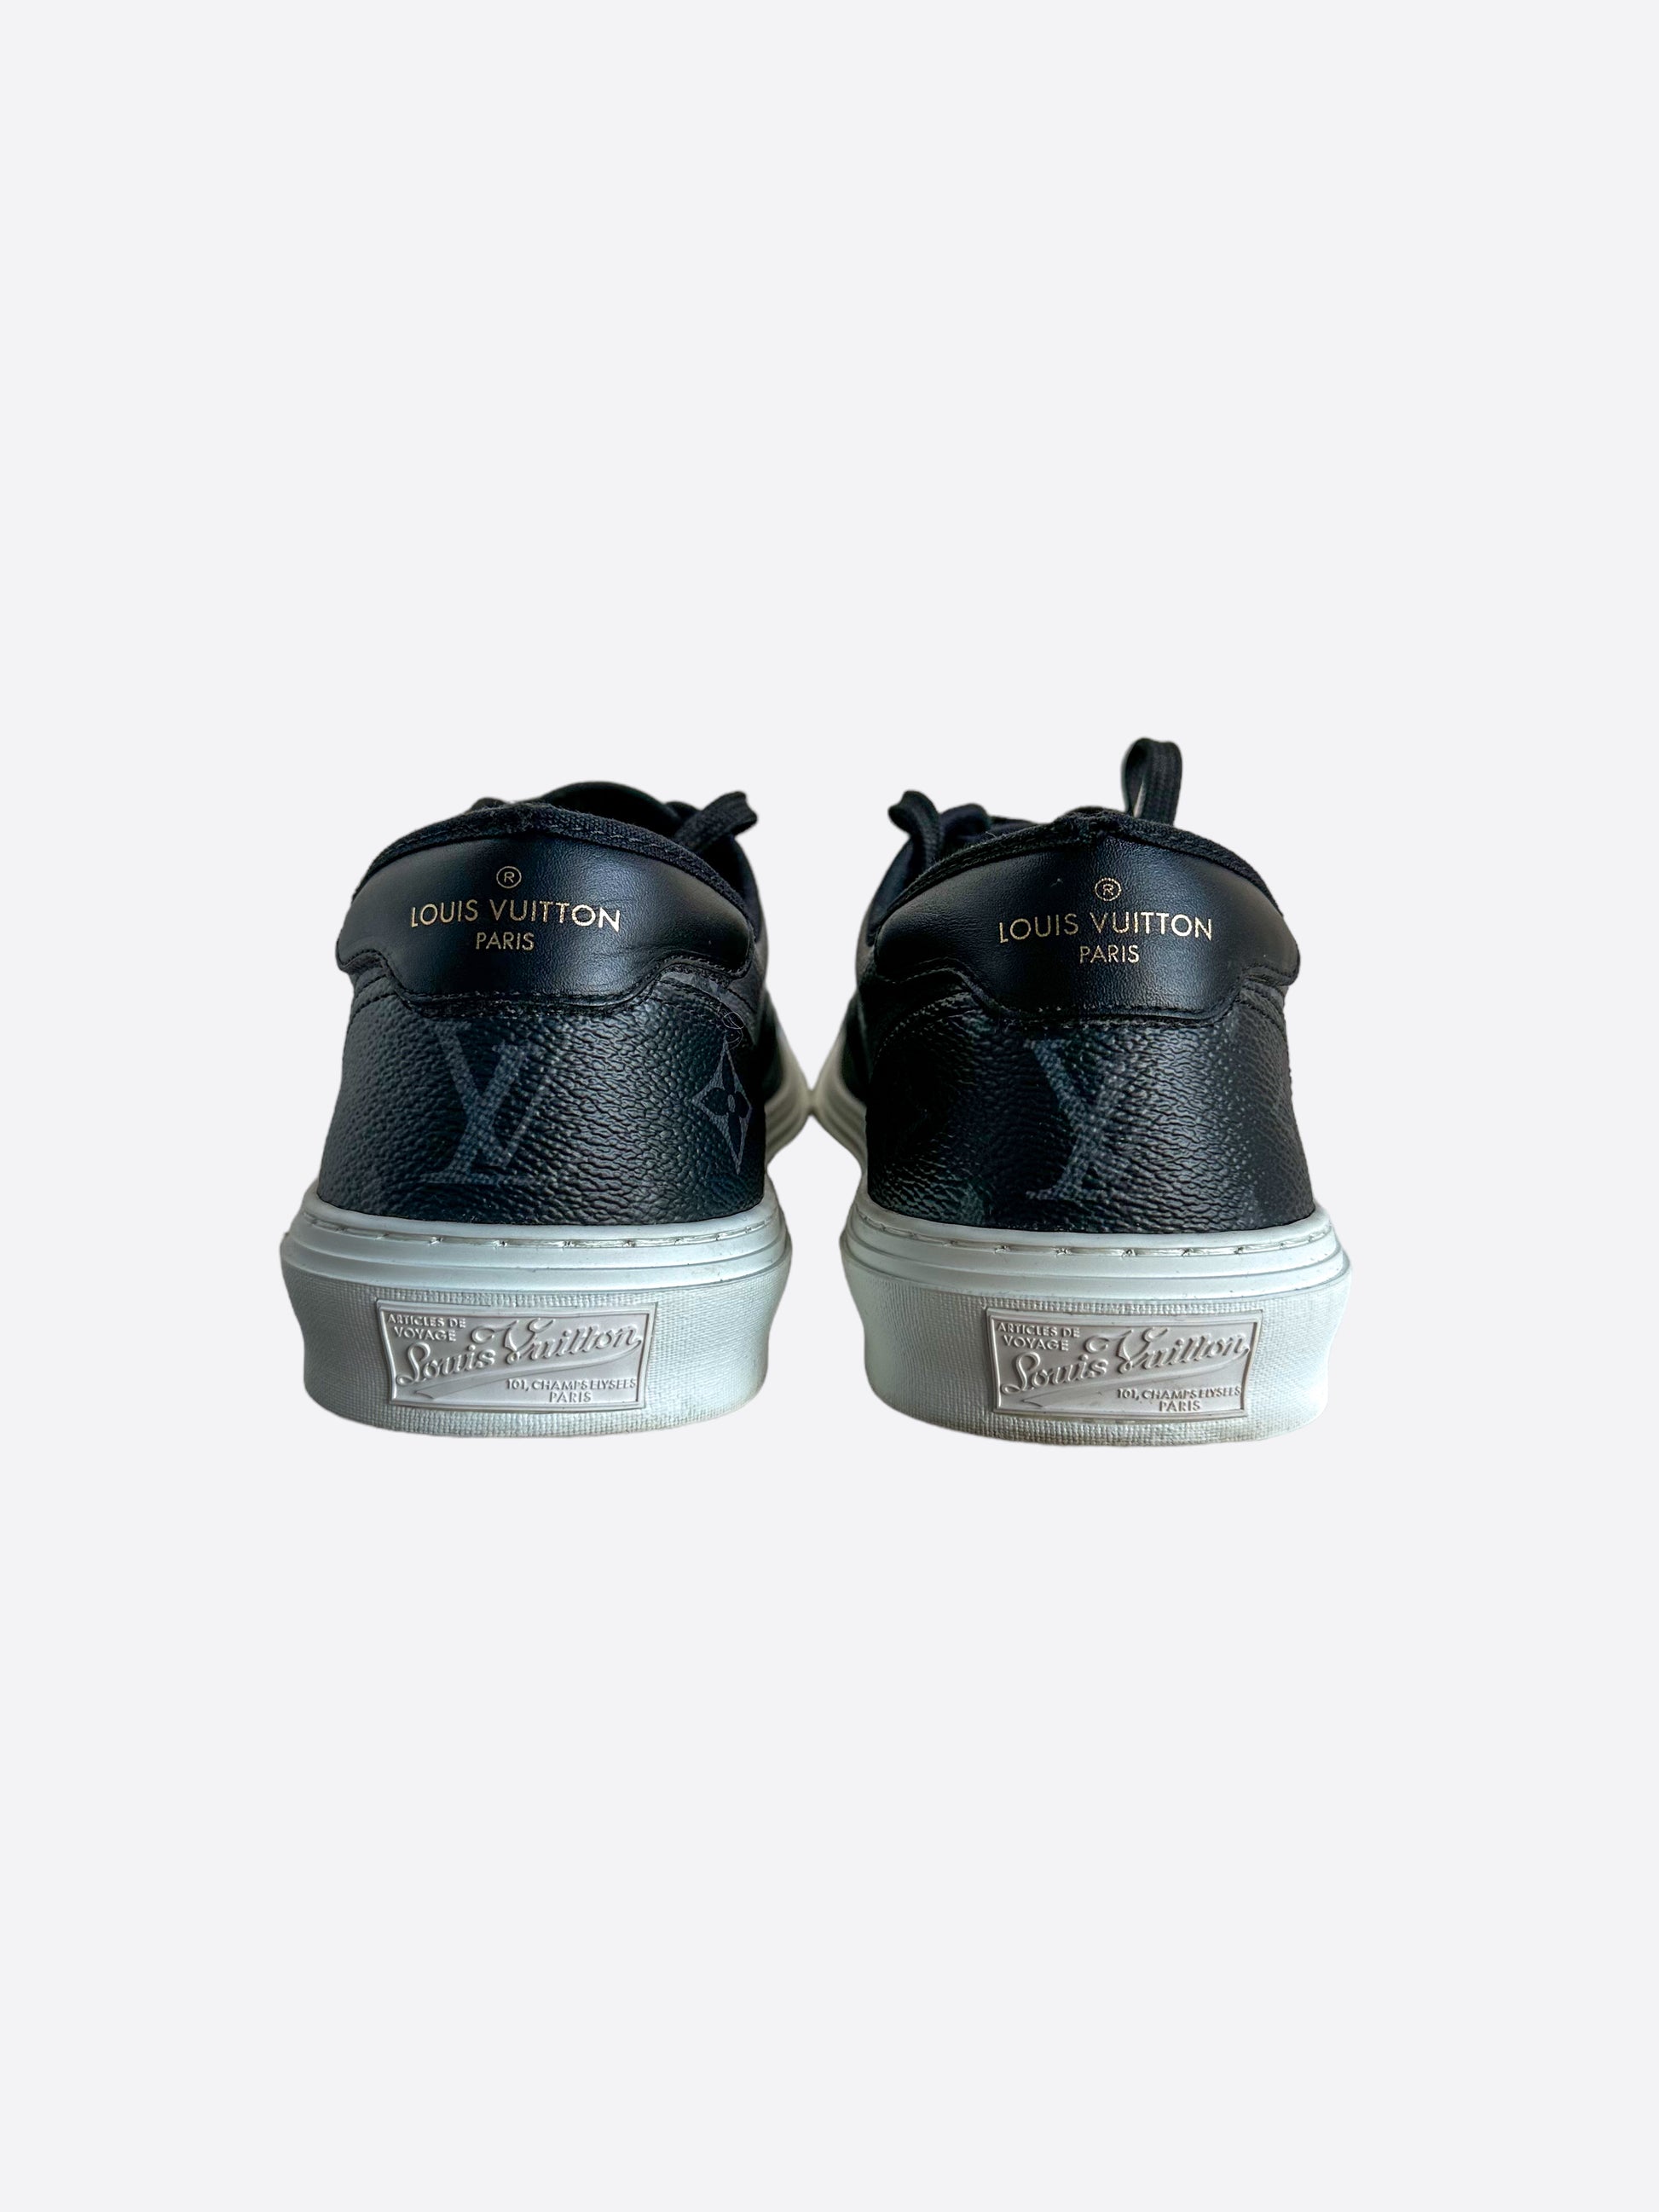 LOUIS VUITTON Glazed Calfskin Mens Beverly Hills Sneakers 5.5